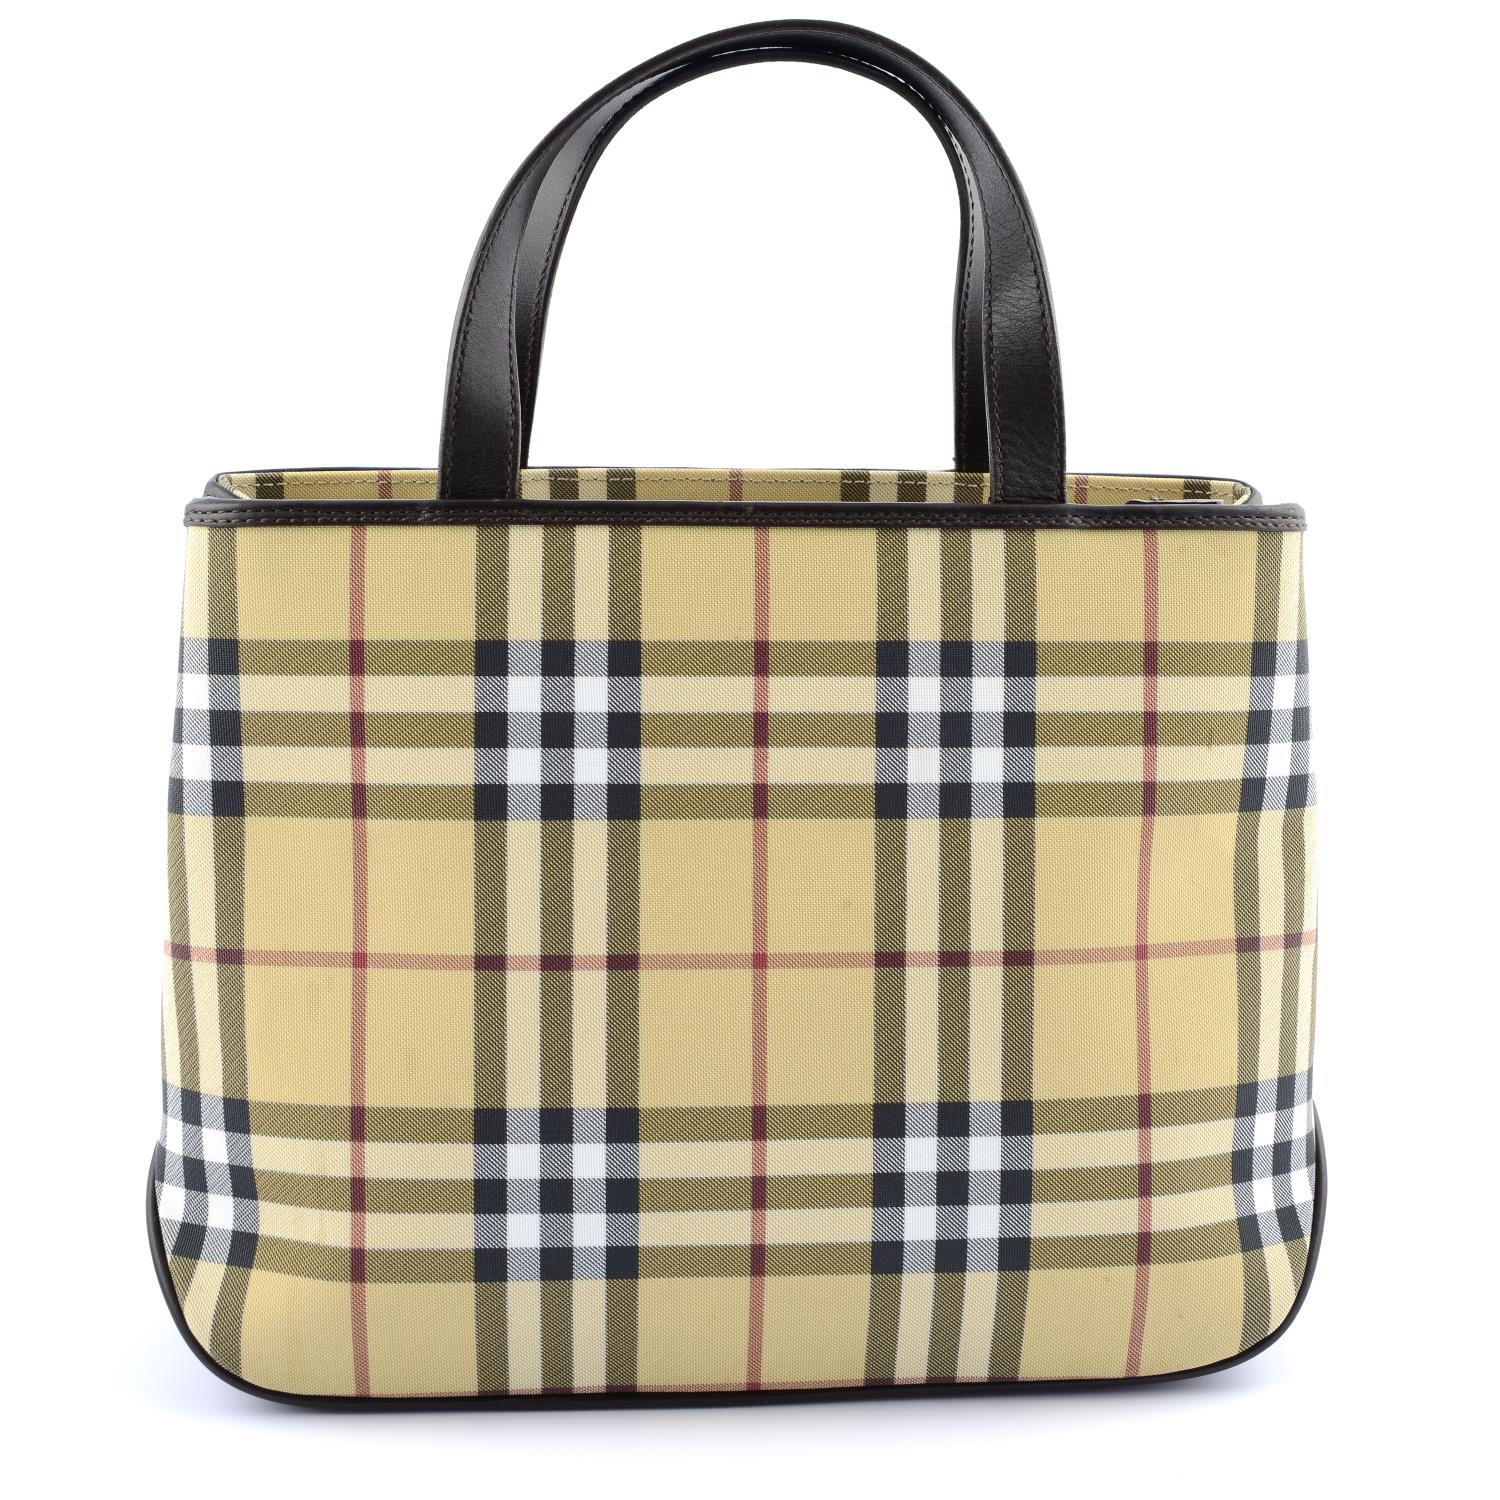 BURBERRY - a Nova Check handbag. - Image 2 of 6